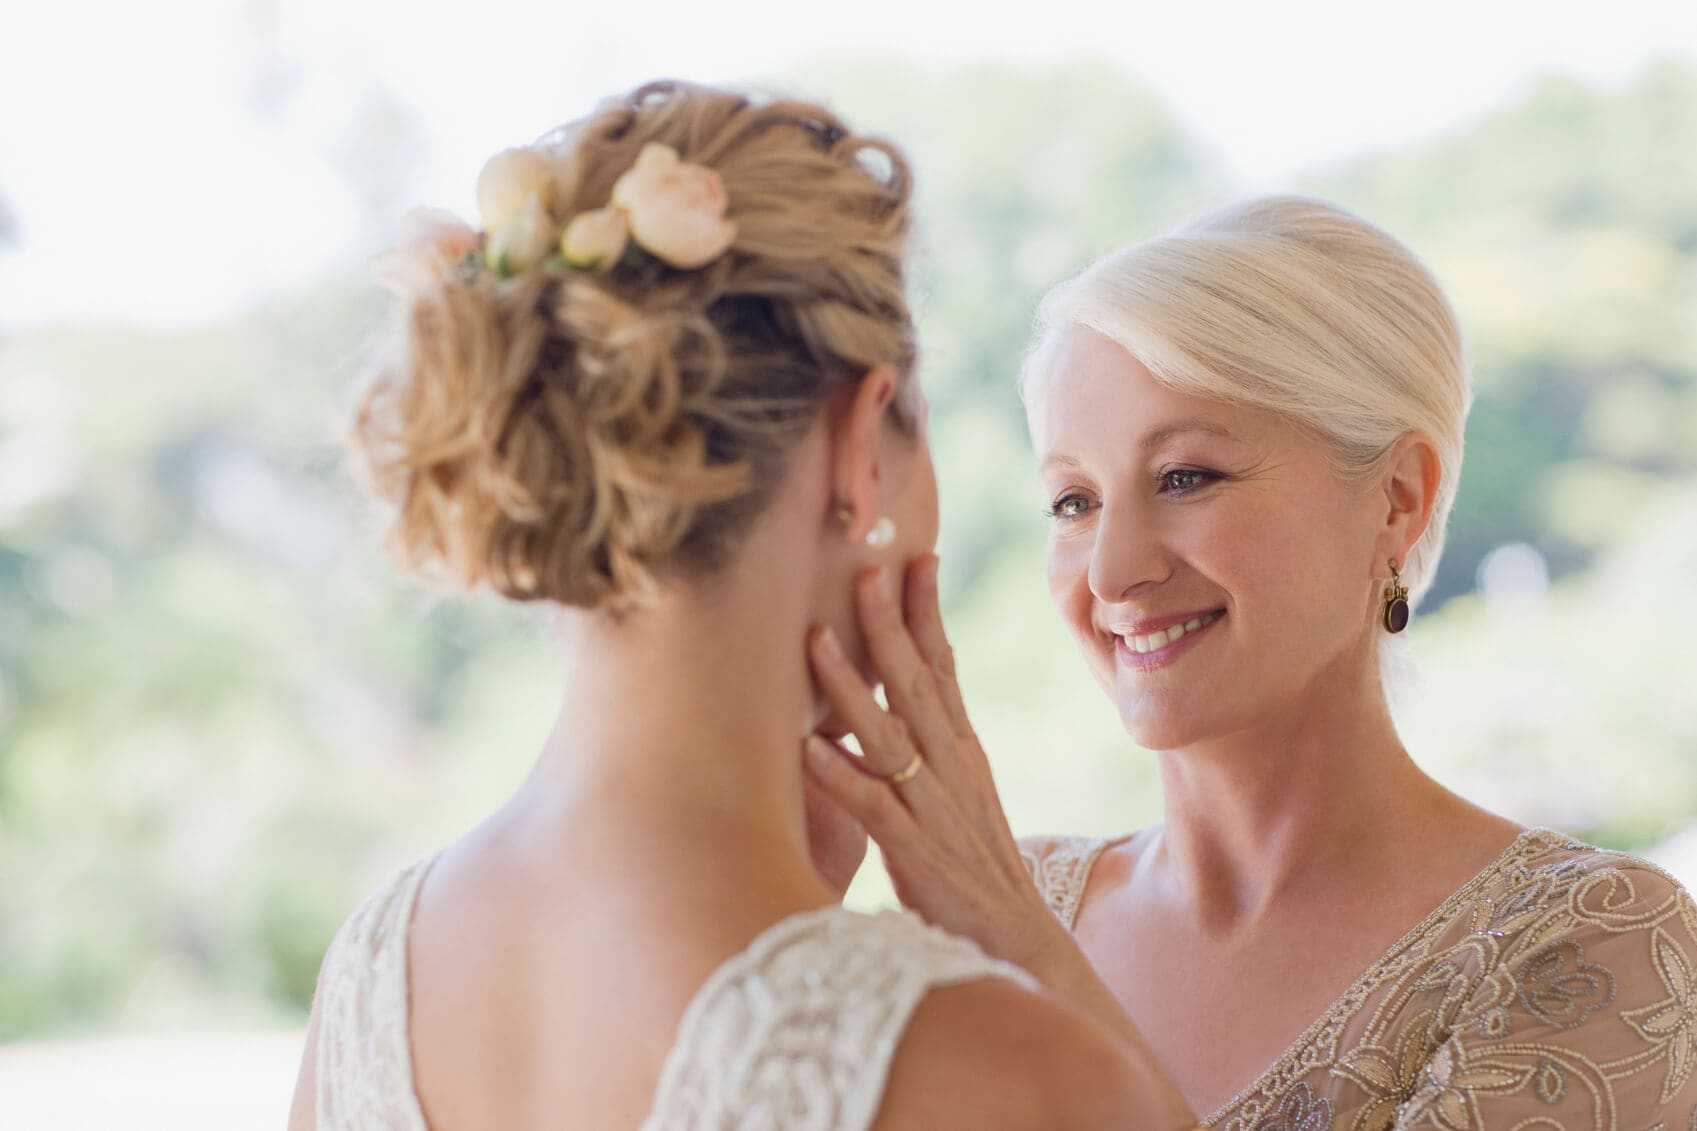 Прически на короткие волосы на свадьбу - красивые укладки на торжество